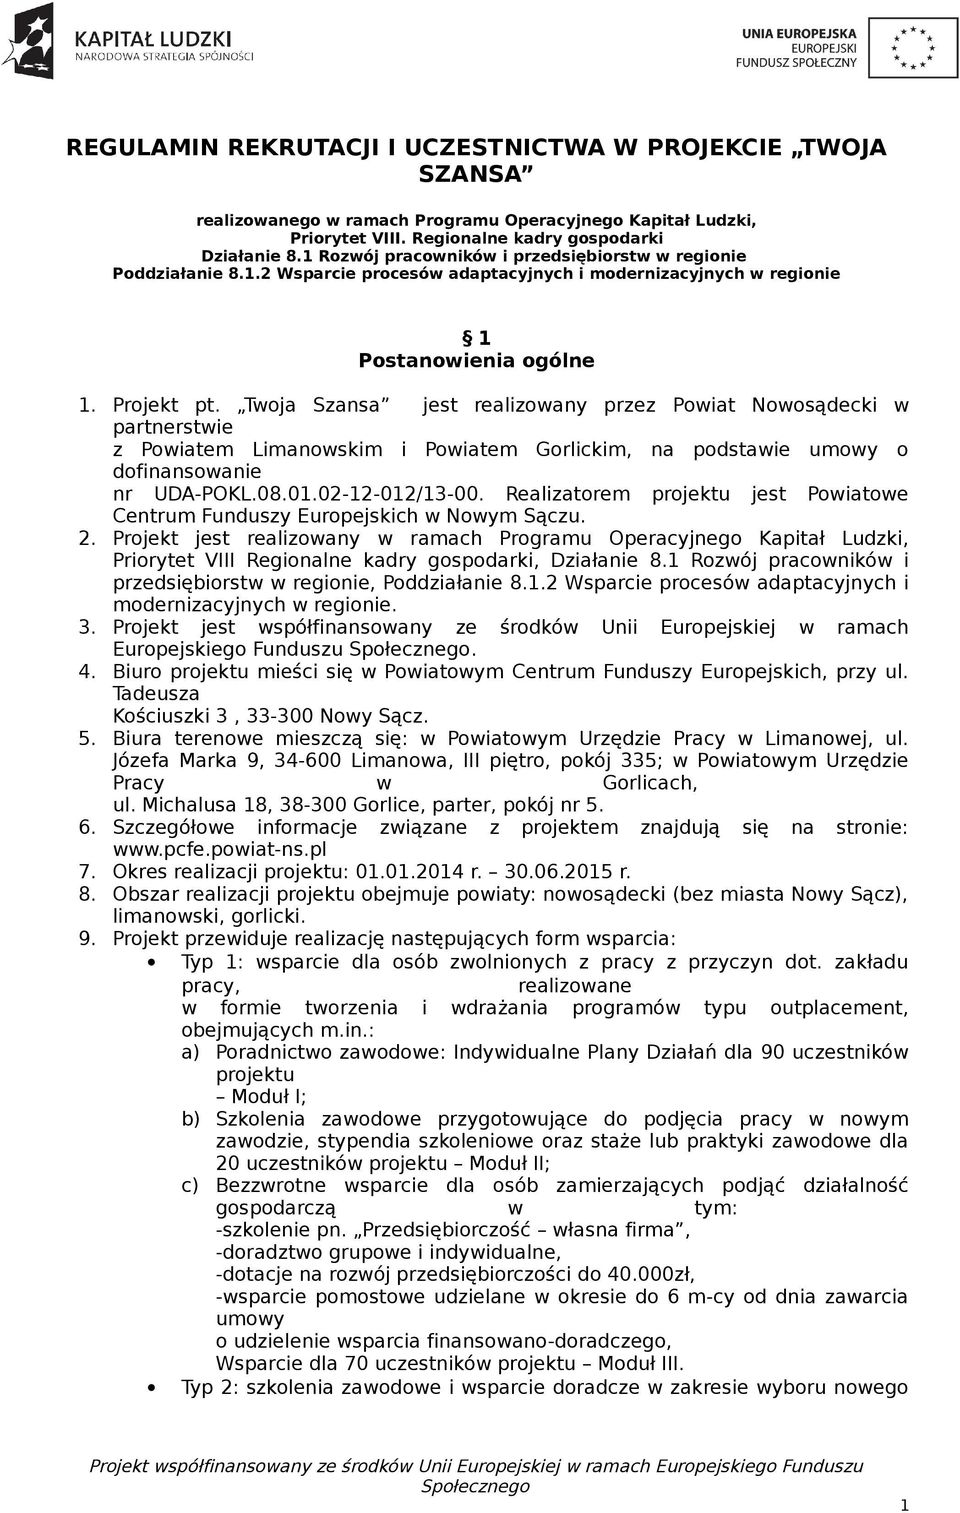 Twoja Szansa jest realizowany przez Powiat Nowosądecki w partnerstwie z Powiatem Limanowskim i Powiatem Gorlickim, na podstawie umowy o dofinansowanie nr UDA-POKL.08.01.02-12-012/13-00.